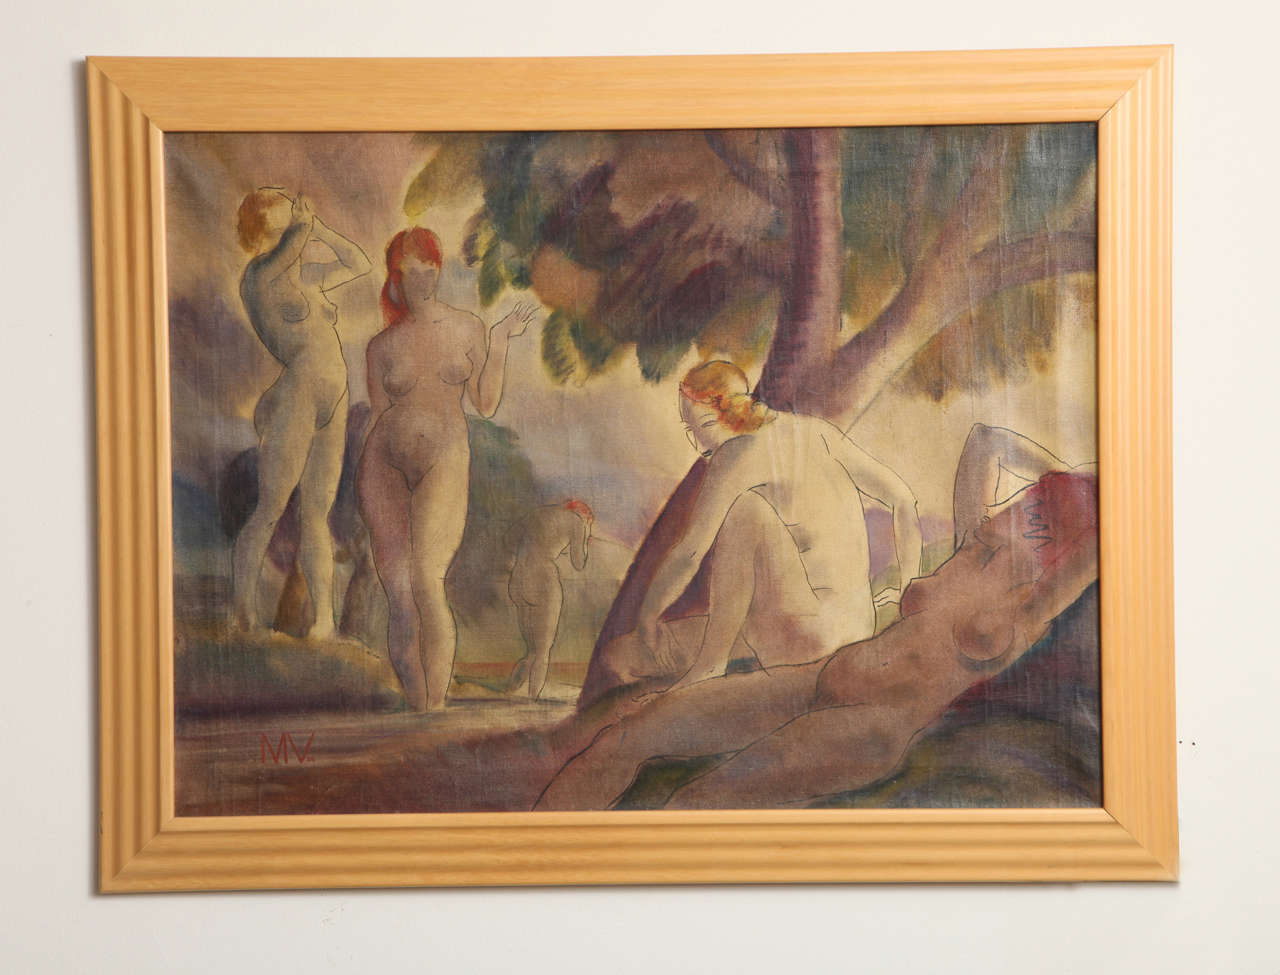 Composition mixte sur toile avec des nus se baignant, signée des initiales en bas à gauche MV et datée 1938. Mesures : 22 ½ x 30 ½ po.